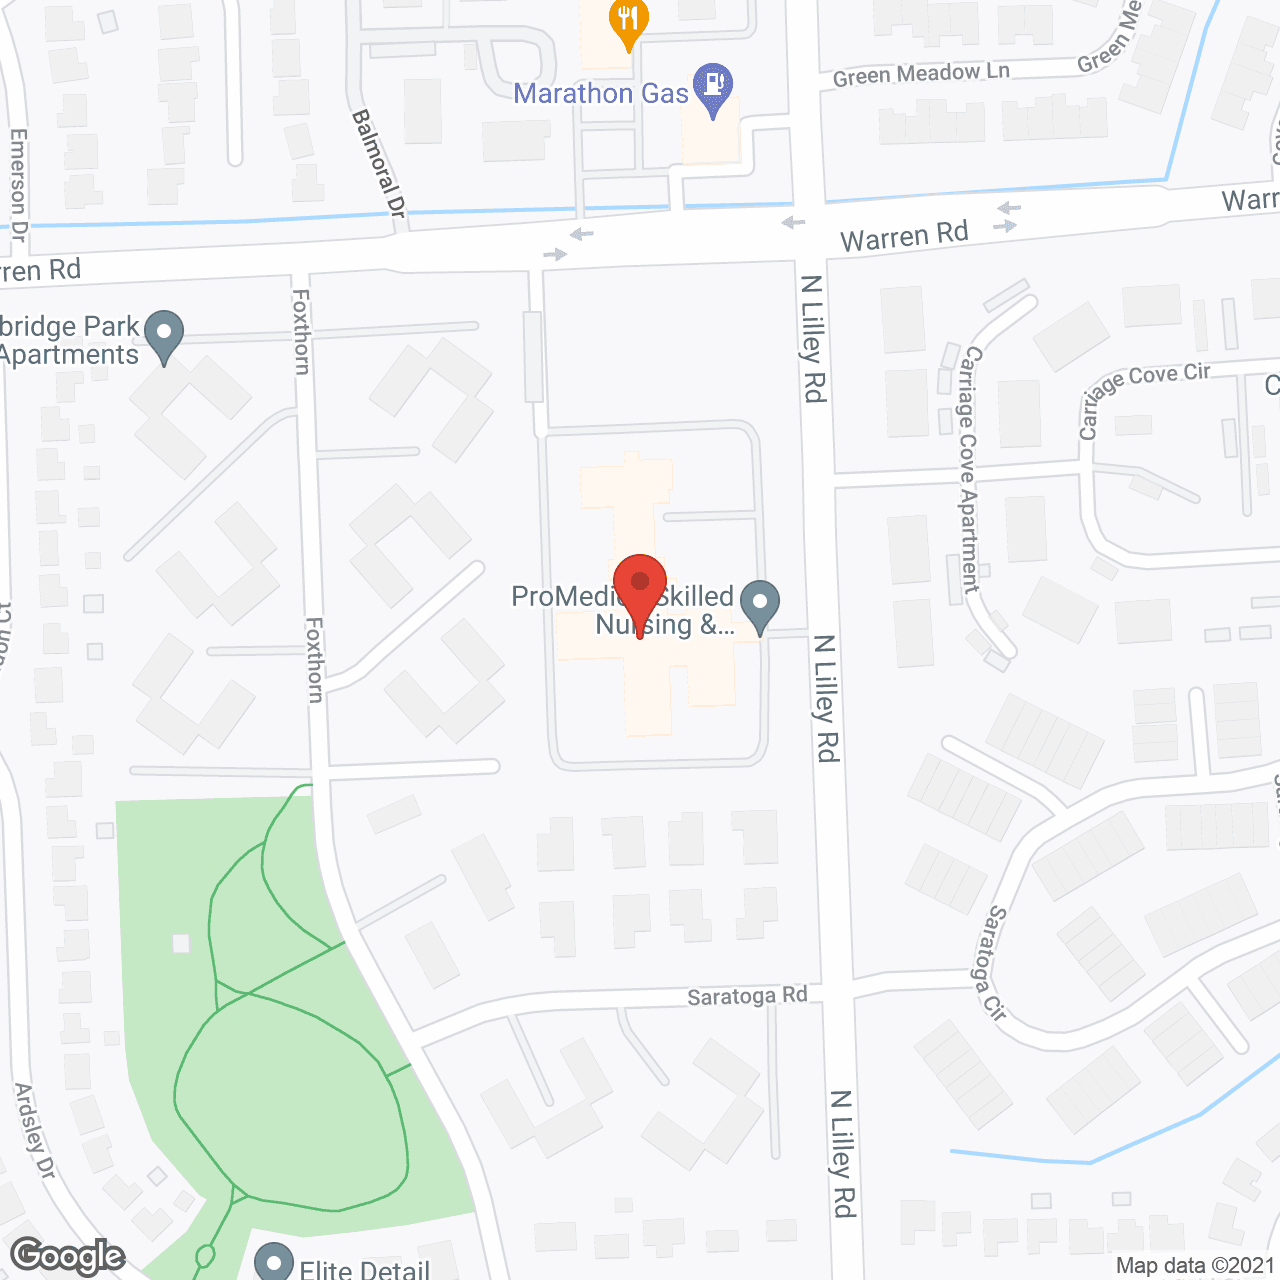 Heartland Health Care Center Canton in google map